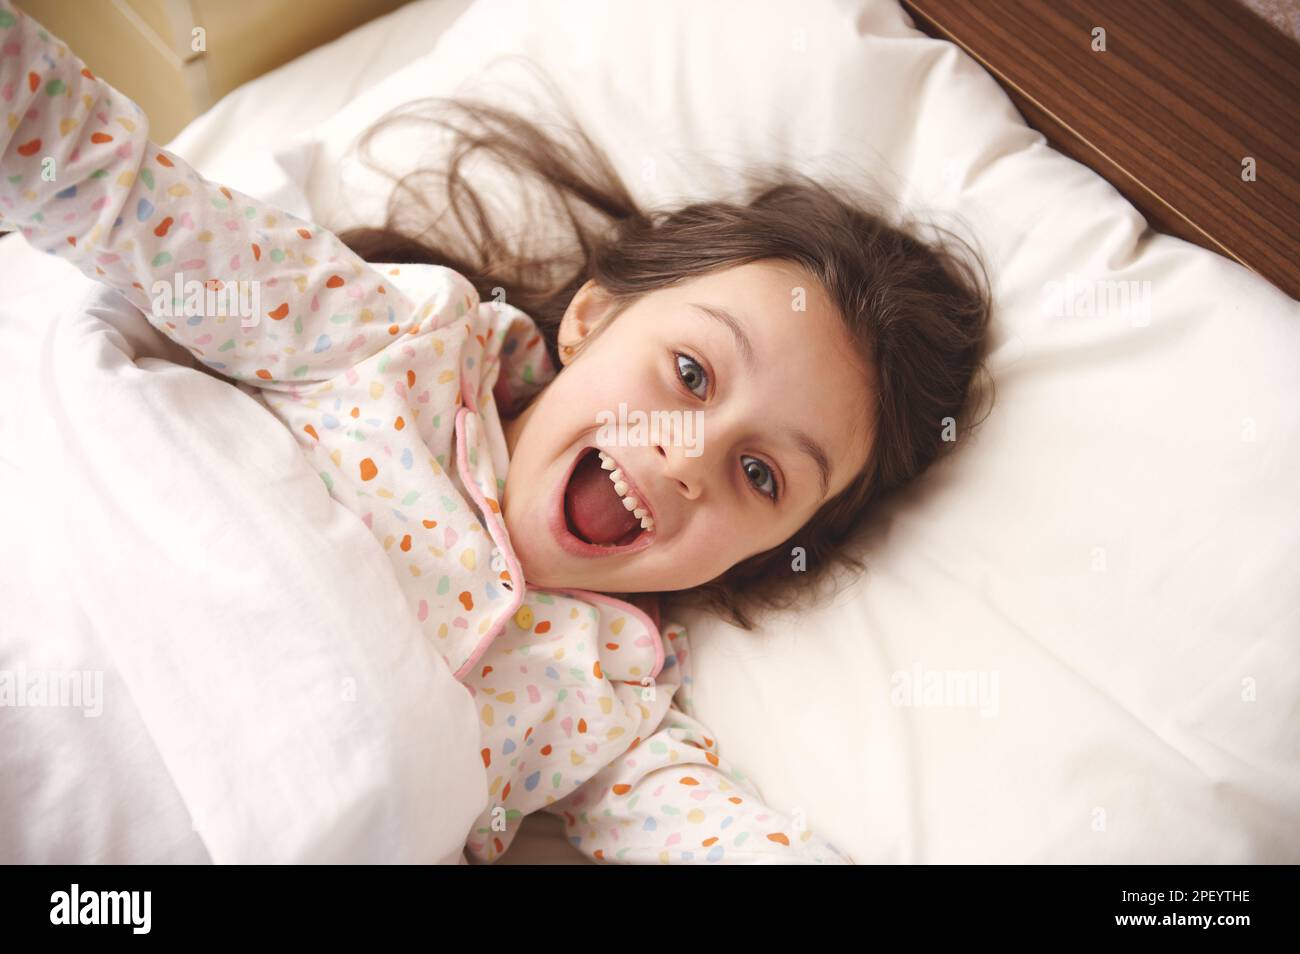 Ein böses kleines Mädchen im Schlafanzug, das sich vor der Kamera Gesichter macht, sich am Morgen beim Aufwachen streckt, sich im Bett entspannt Stockfoto